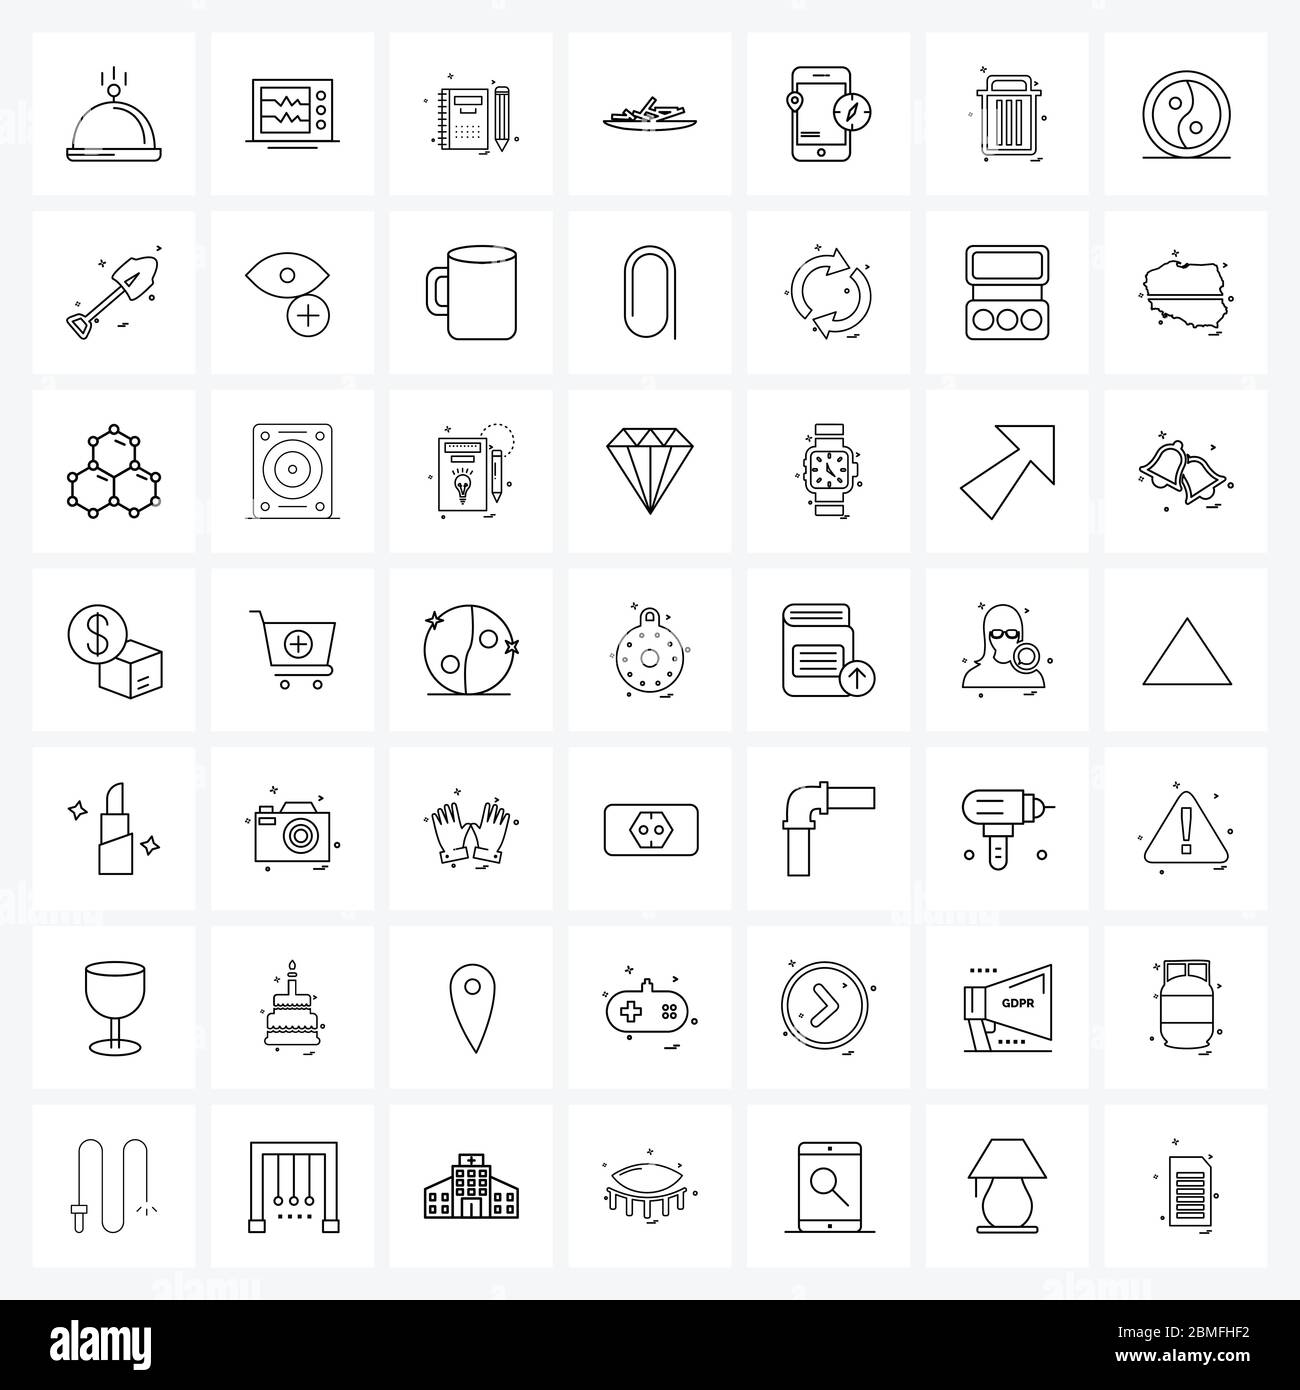 49 icône de ligne d'interface ensemble de symboles modernes sur le pointeur de carte, la boussole, l'éducation, les puces, les frites Illustration vectorielle Illustration de Vecteur